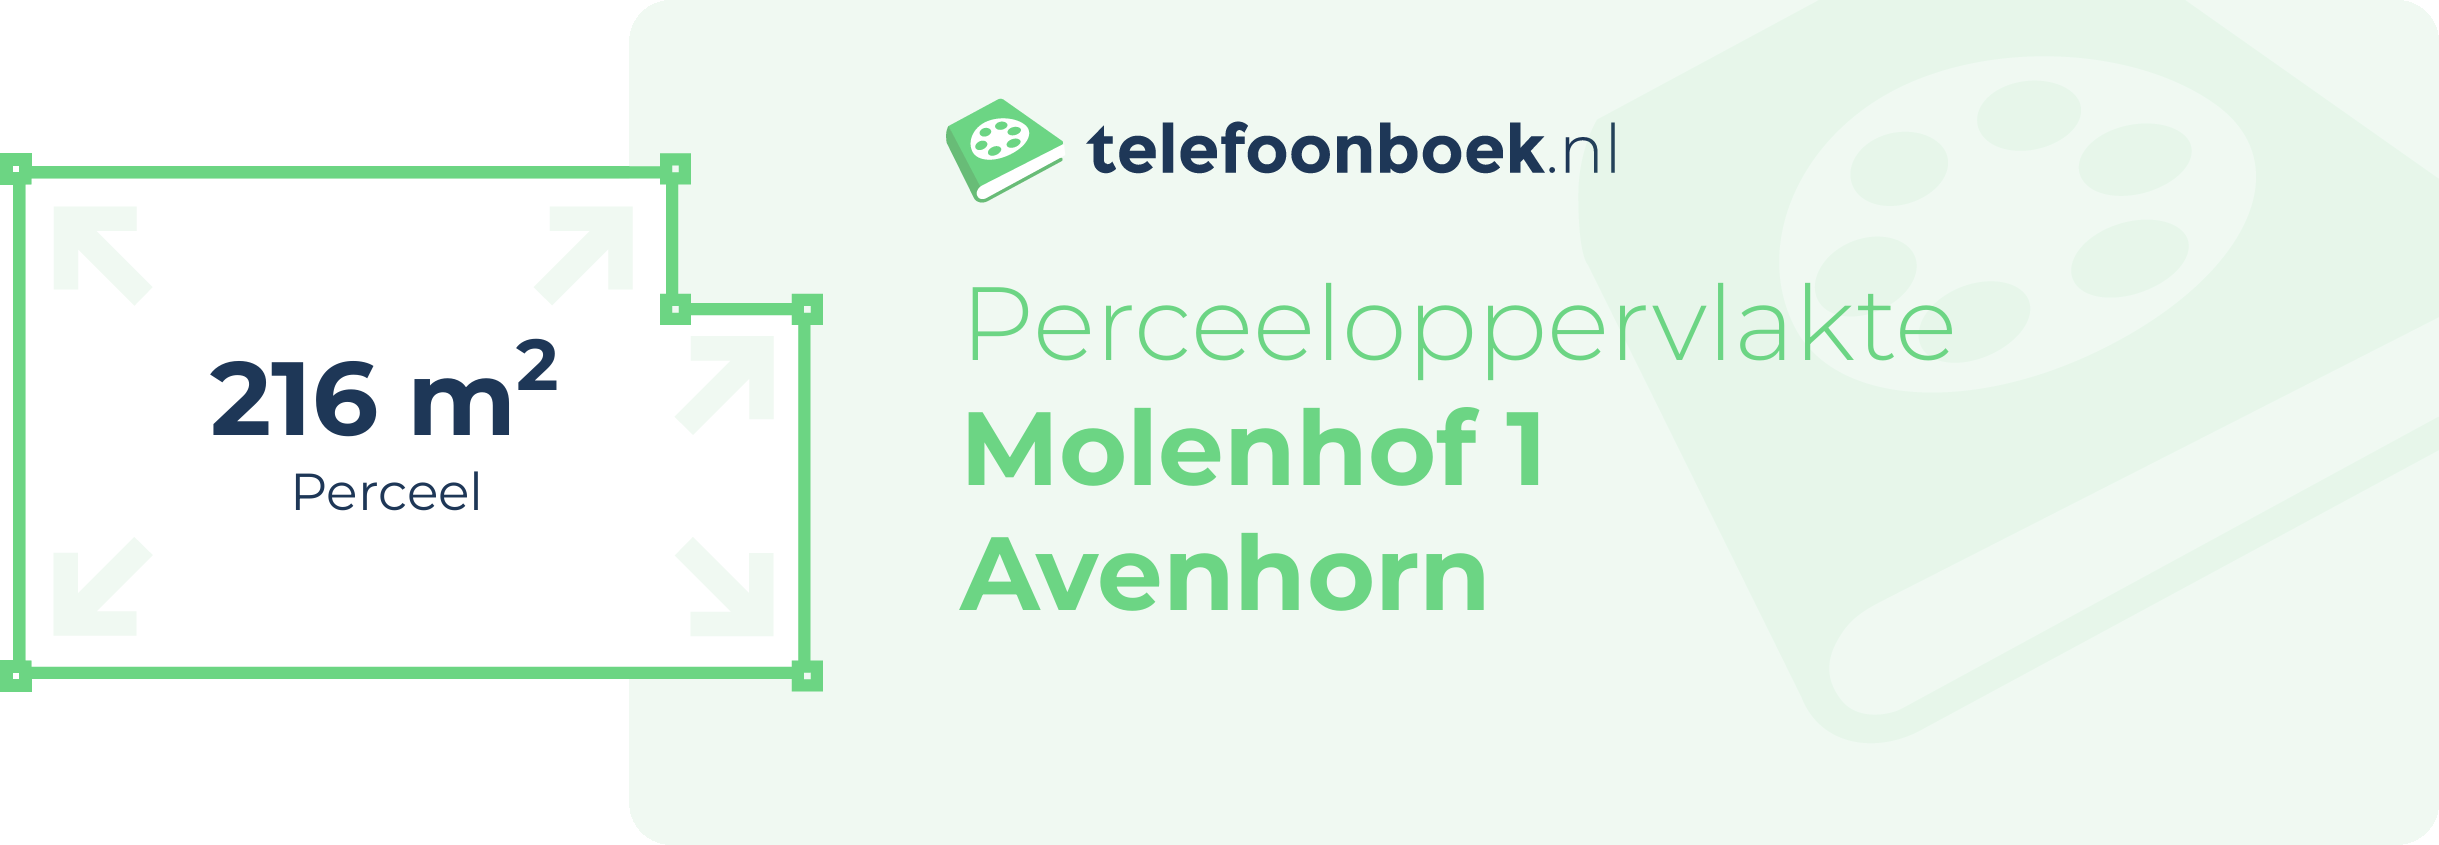 Perceeloppervlakte Molenhof 1 Avenhorn